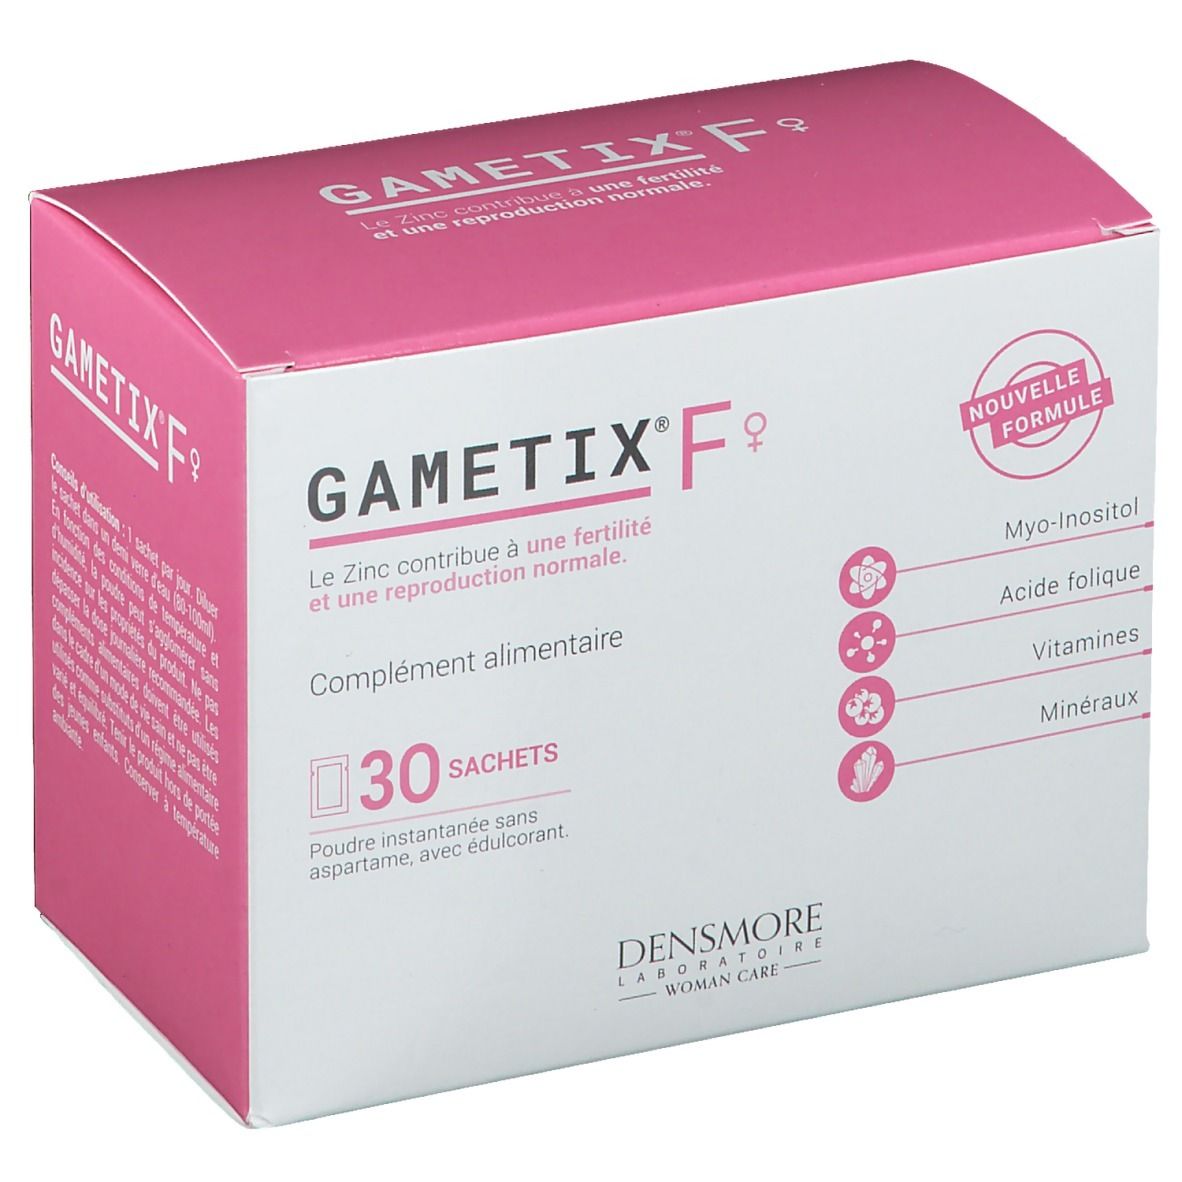 Gametix® F Femme